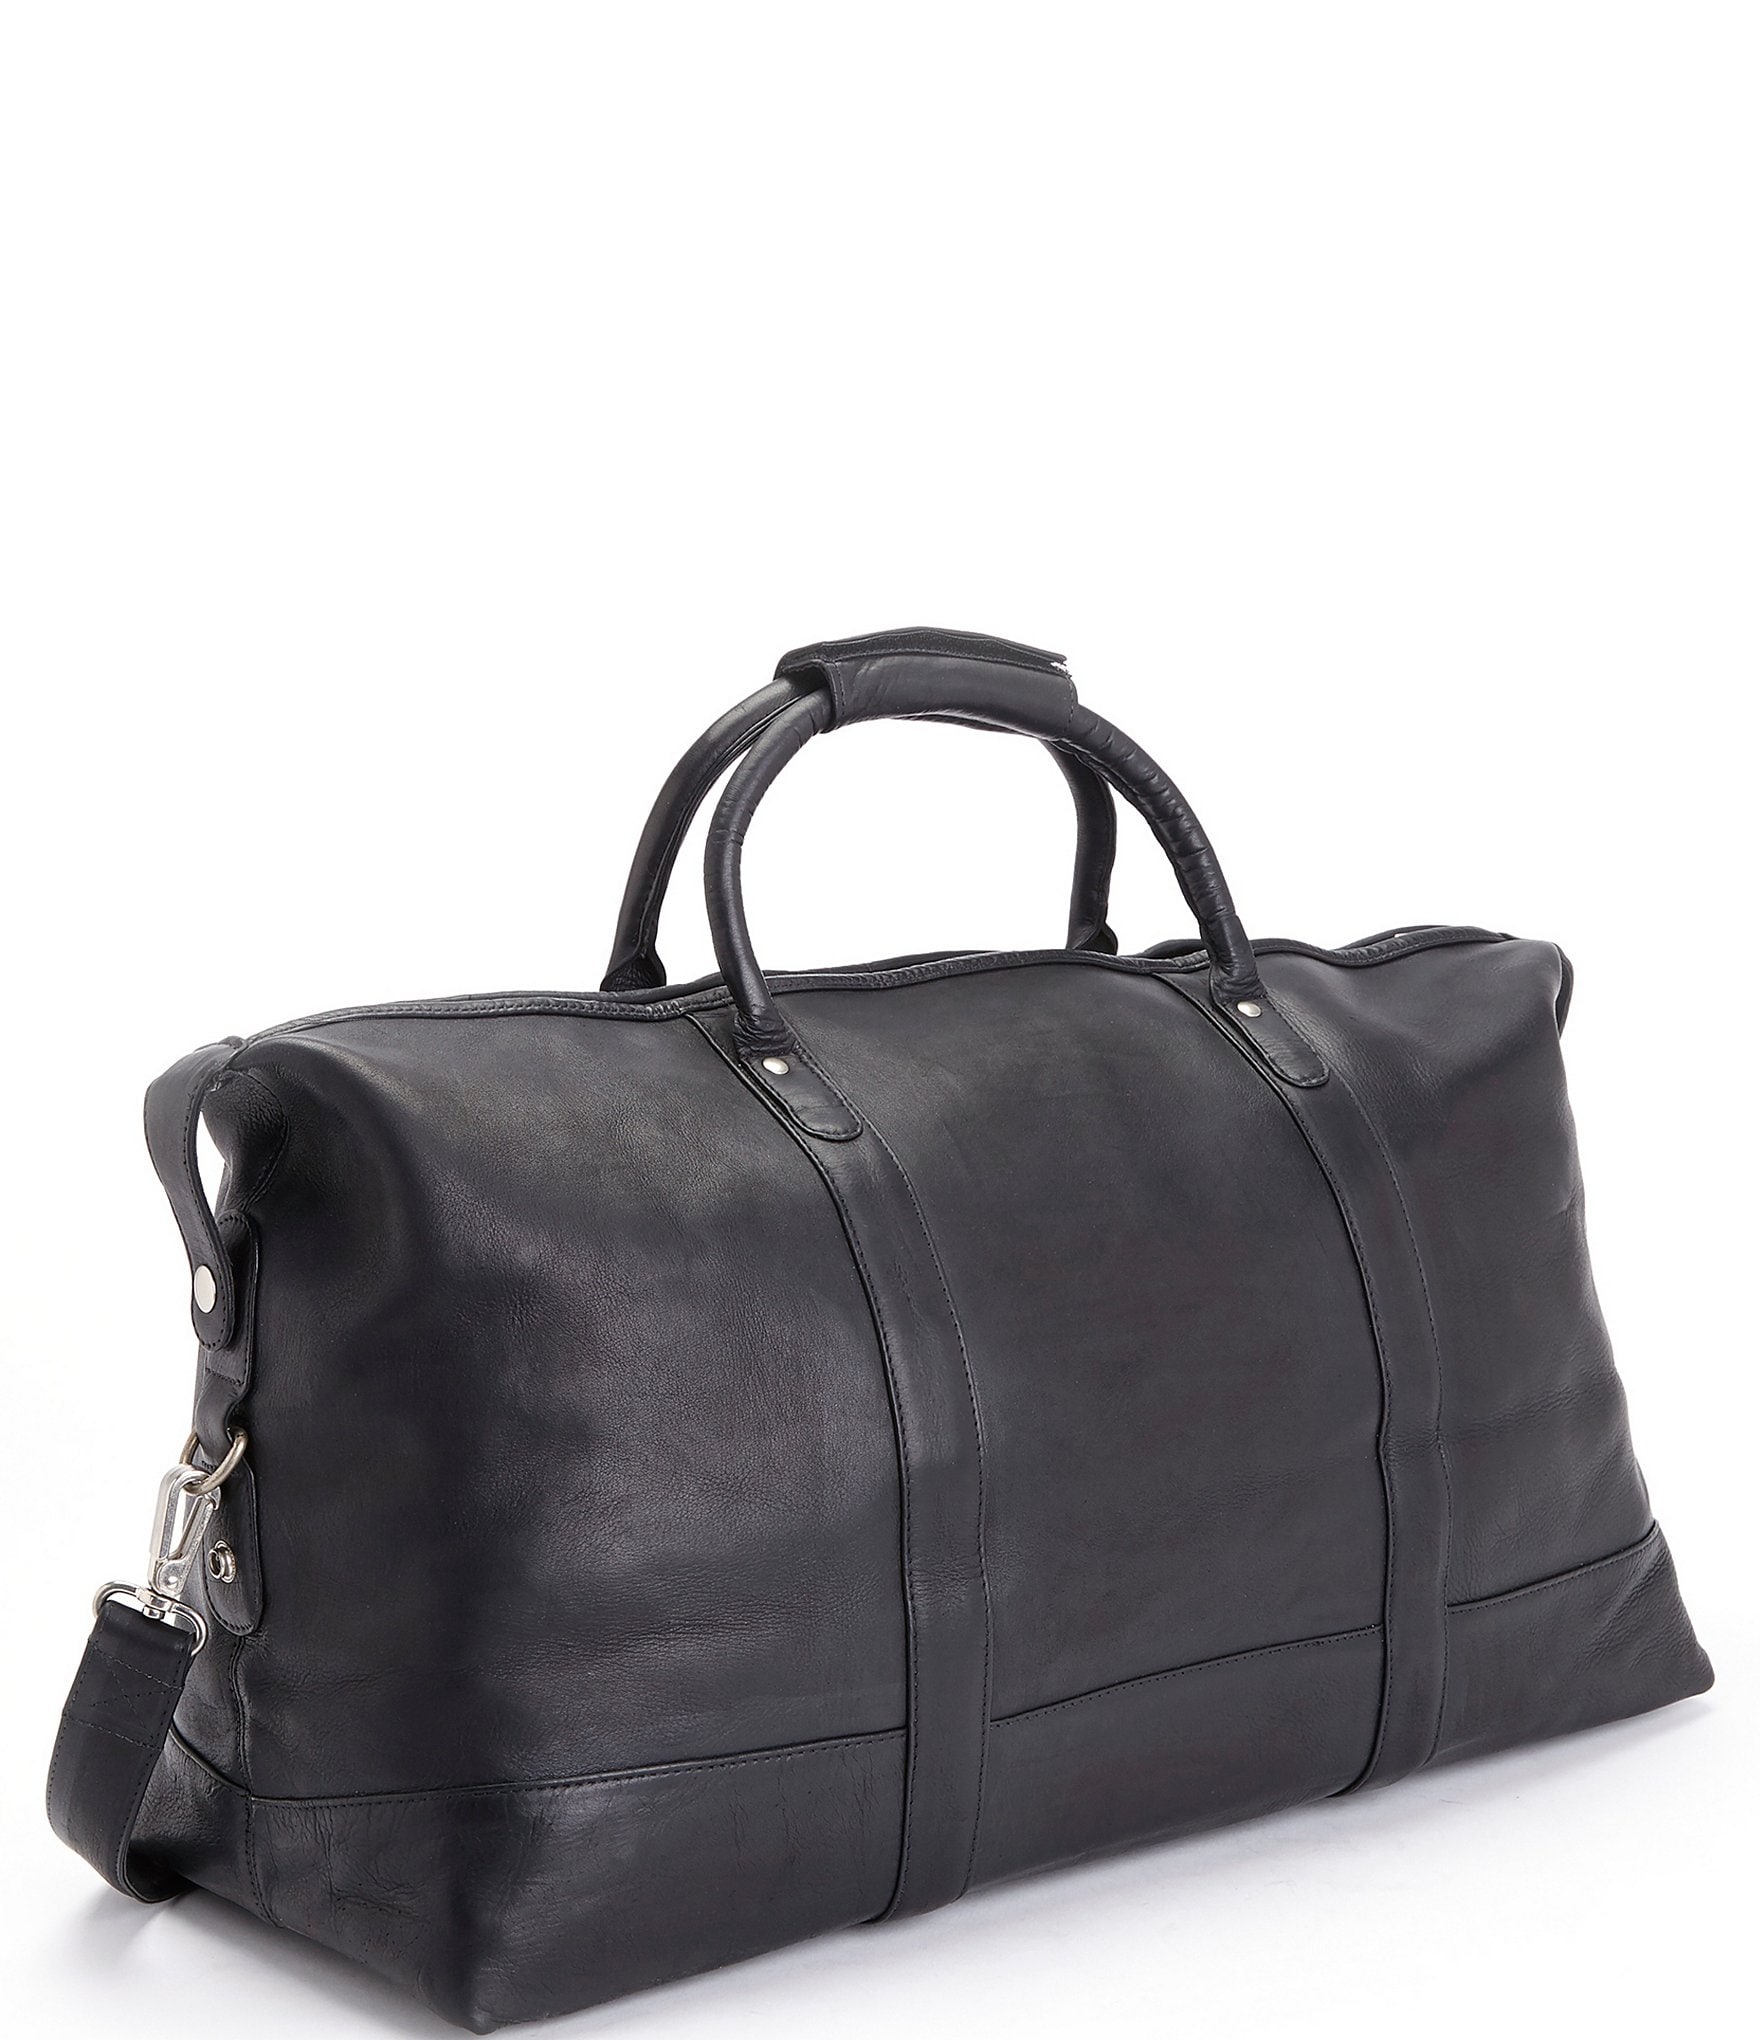 Designer Duffle Bags, Luxury Resale